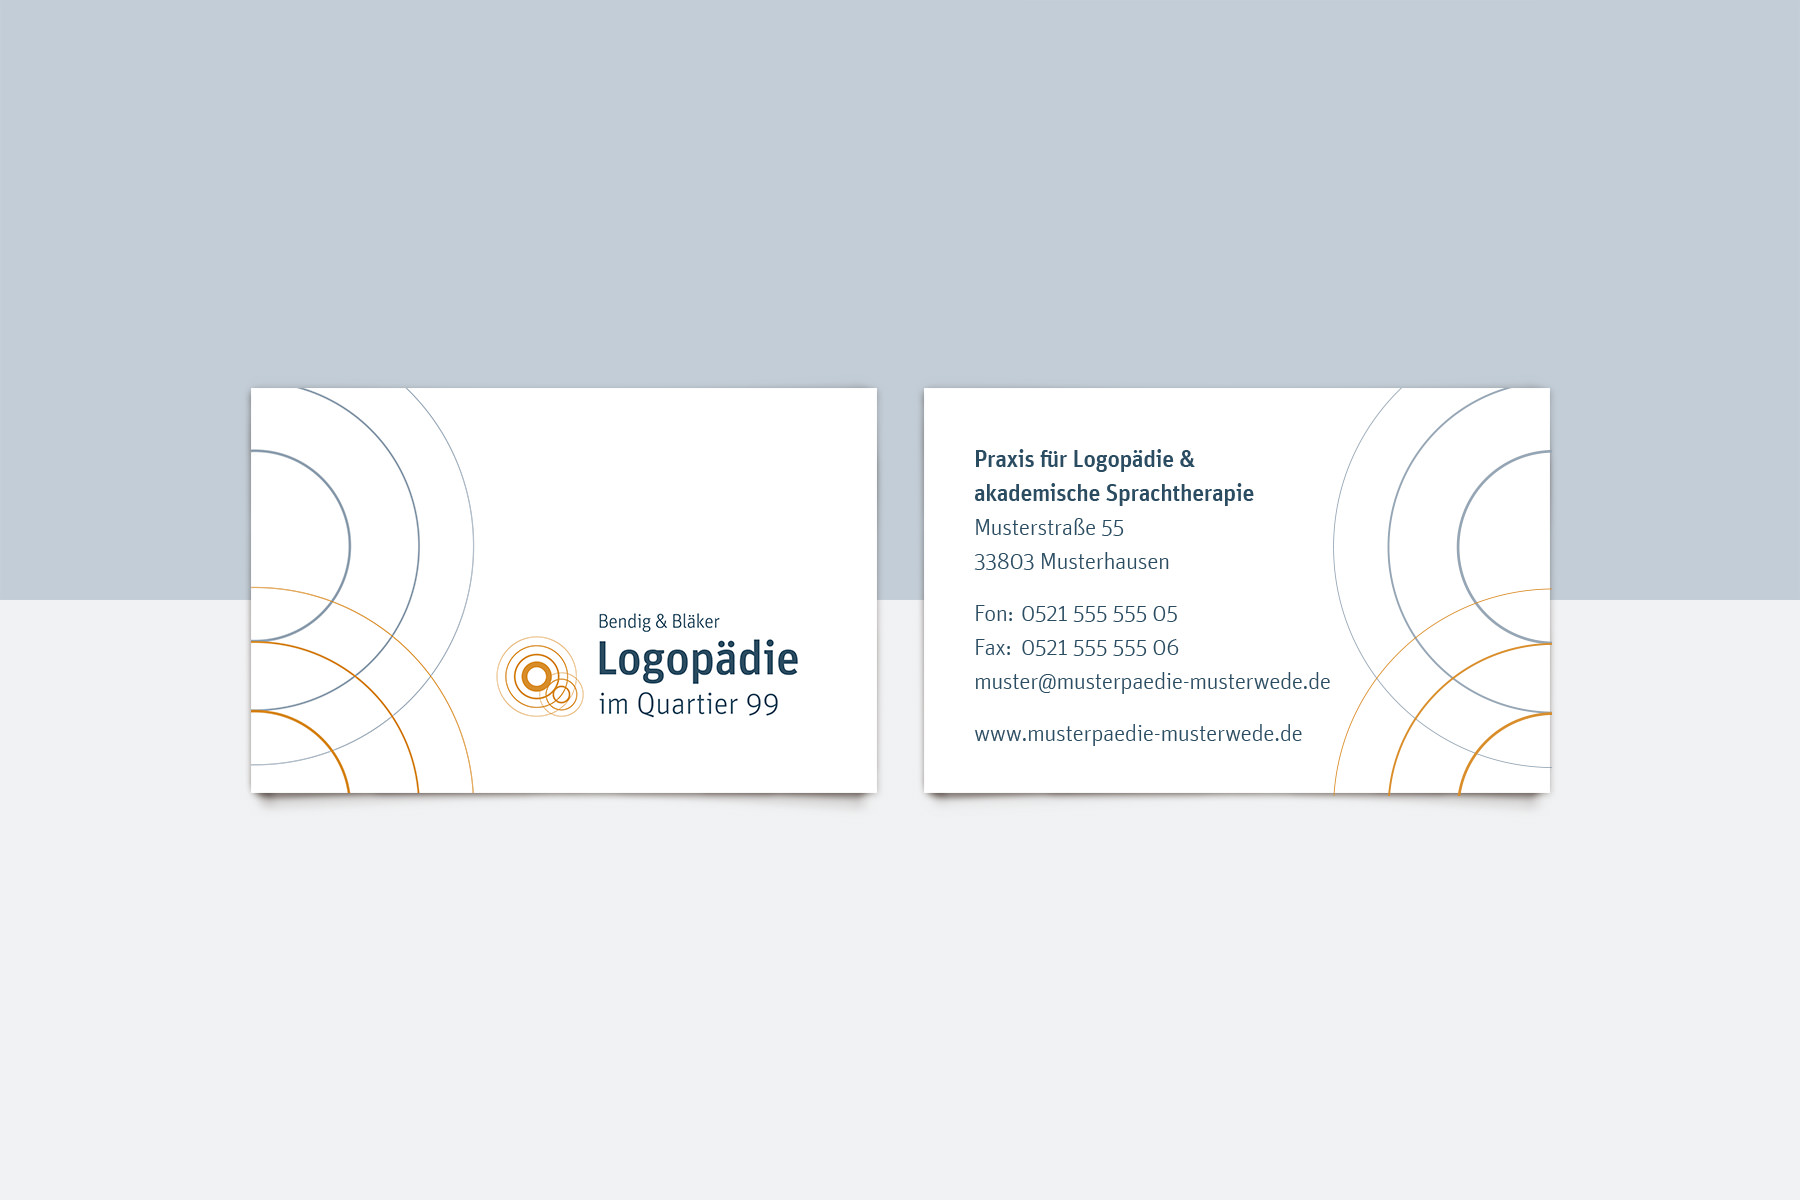 Logo und Corporate Design für Praxis gestalten lassen, Visitenkarten